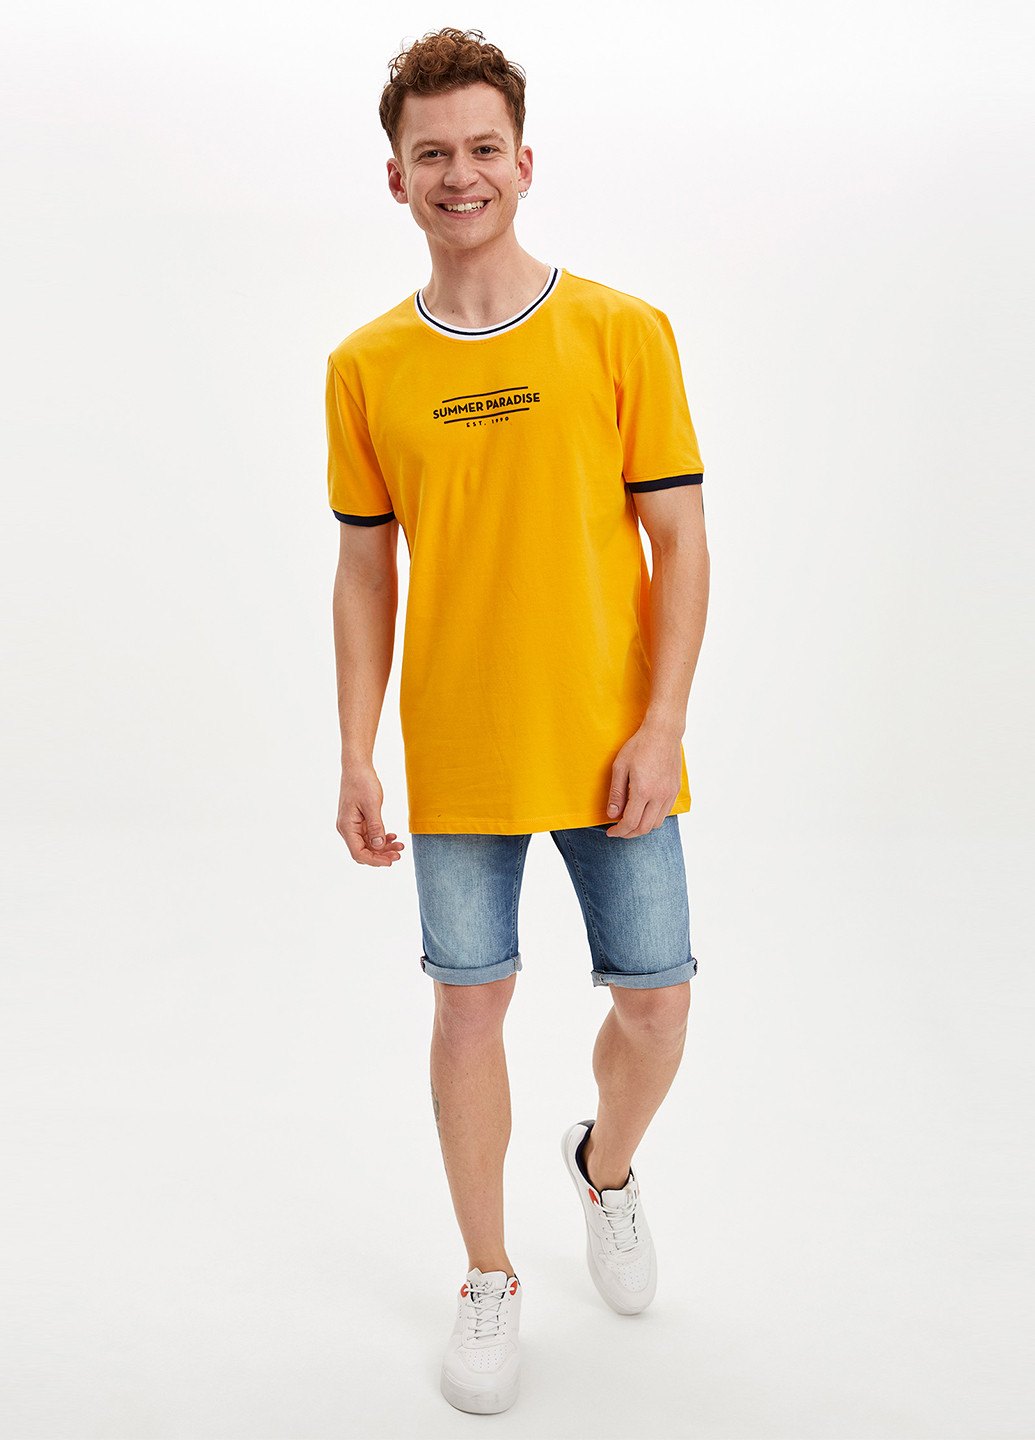 Желтая футболка DeFacto